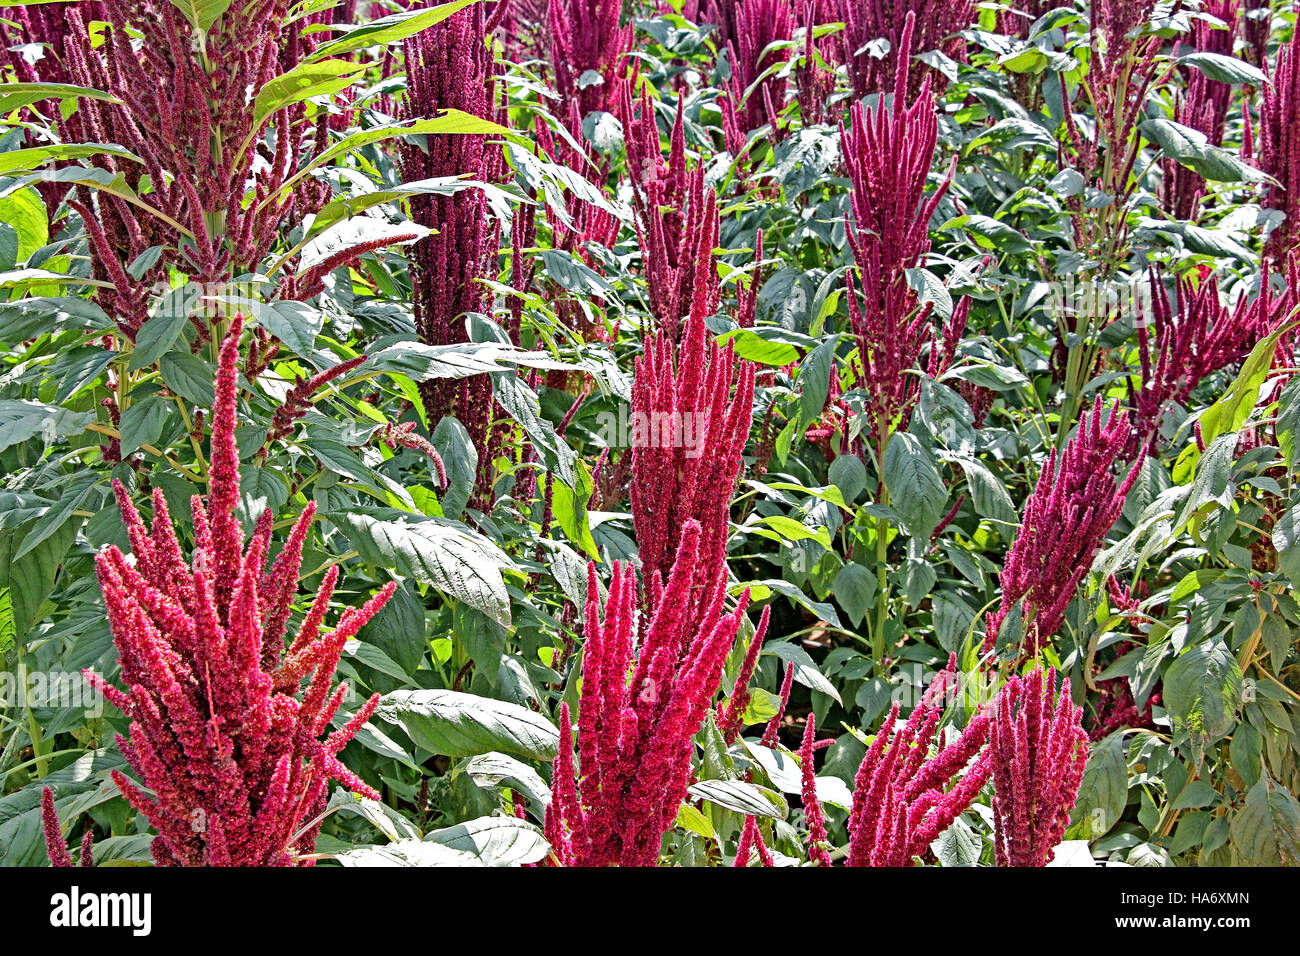 Green amaranth indiennes plantes avec les fleurs rouges dans le champ. L'amarante est cultivé comme les légumes feuilles, les céréales et les plantes ornementales. Genre est Amaranthus. Banque D'Images